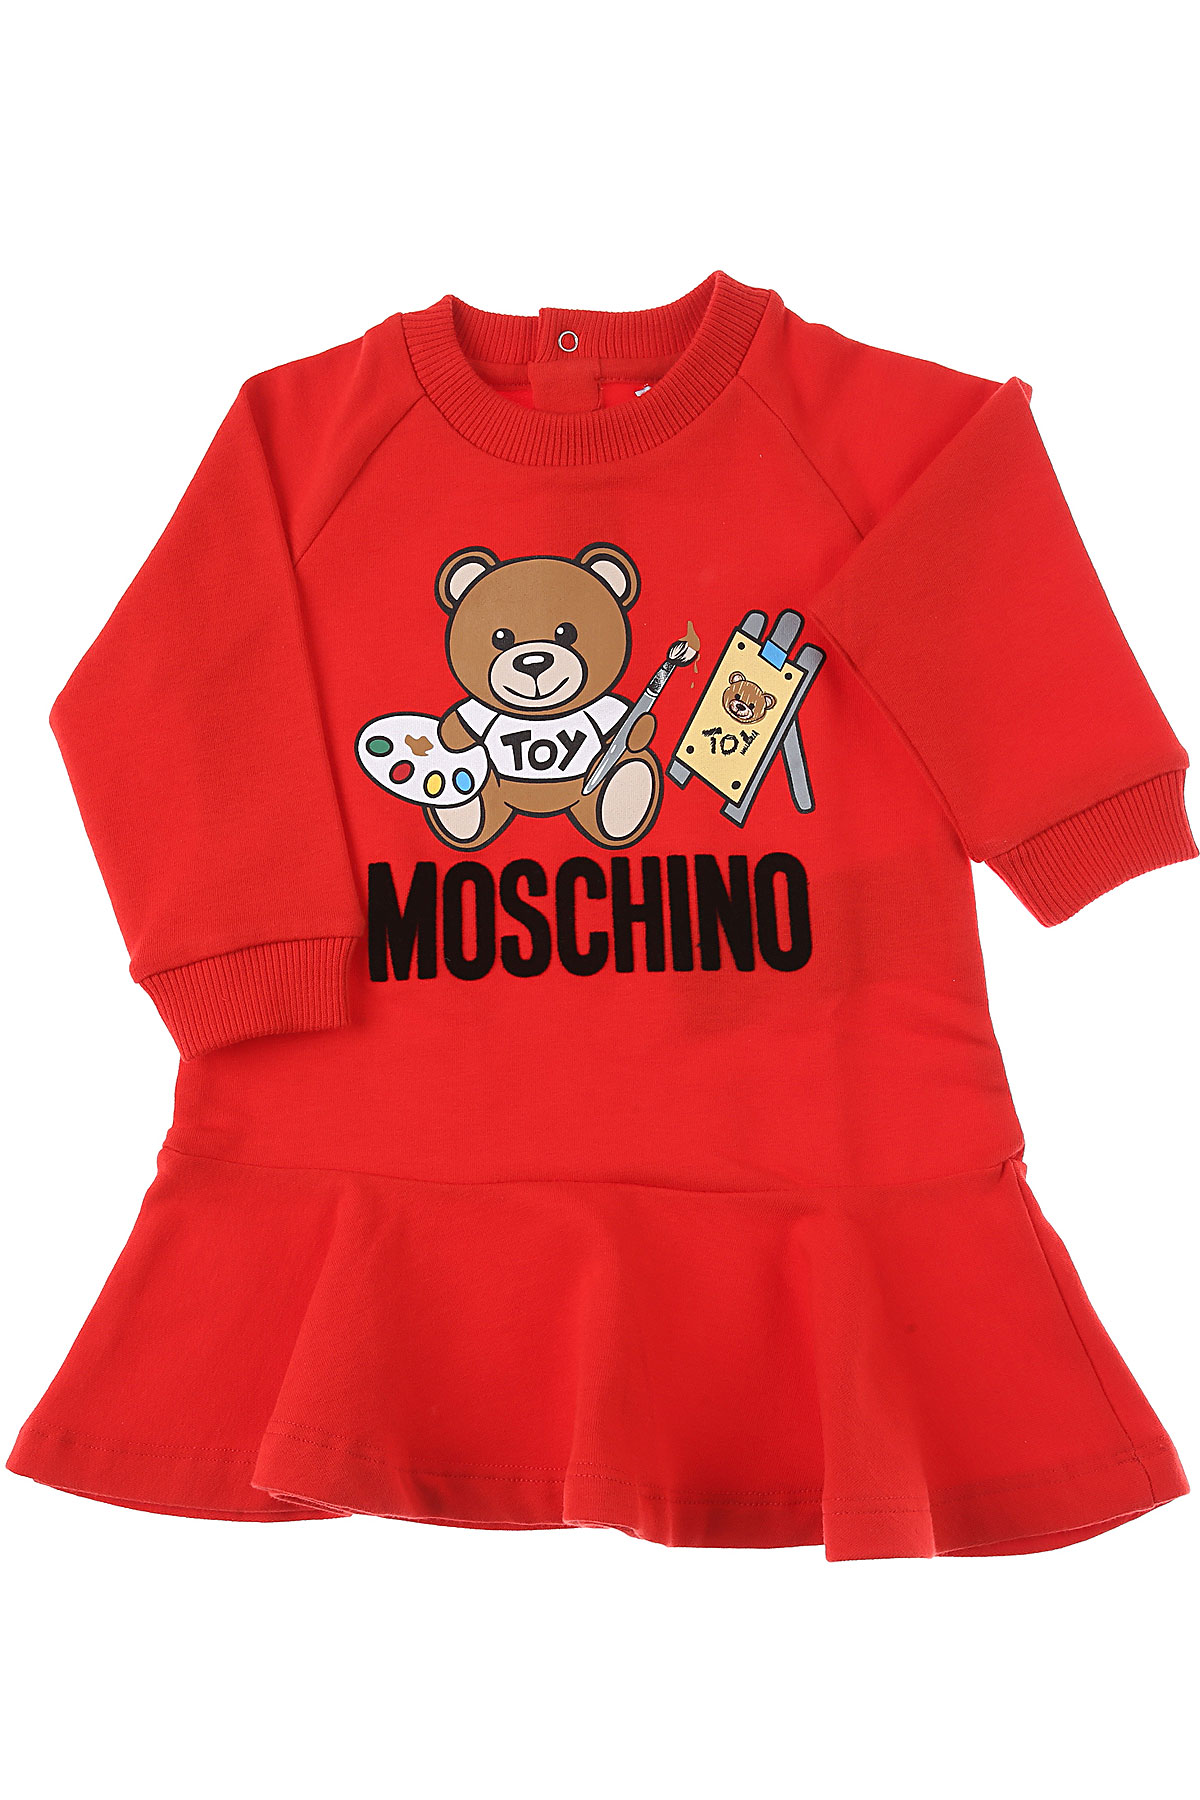 Moschino Baby Kleid für Mädchen Günstig im Sale, Rot, Baumwolle, 2017, 12M 18M 3Y 9M